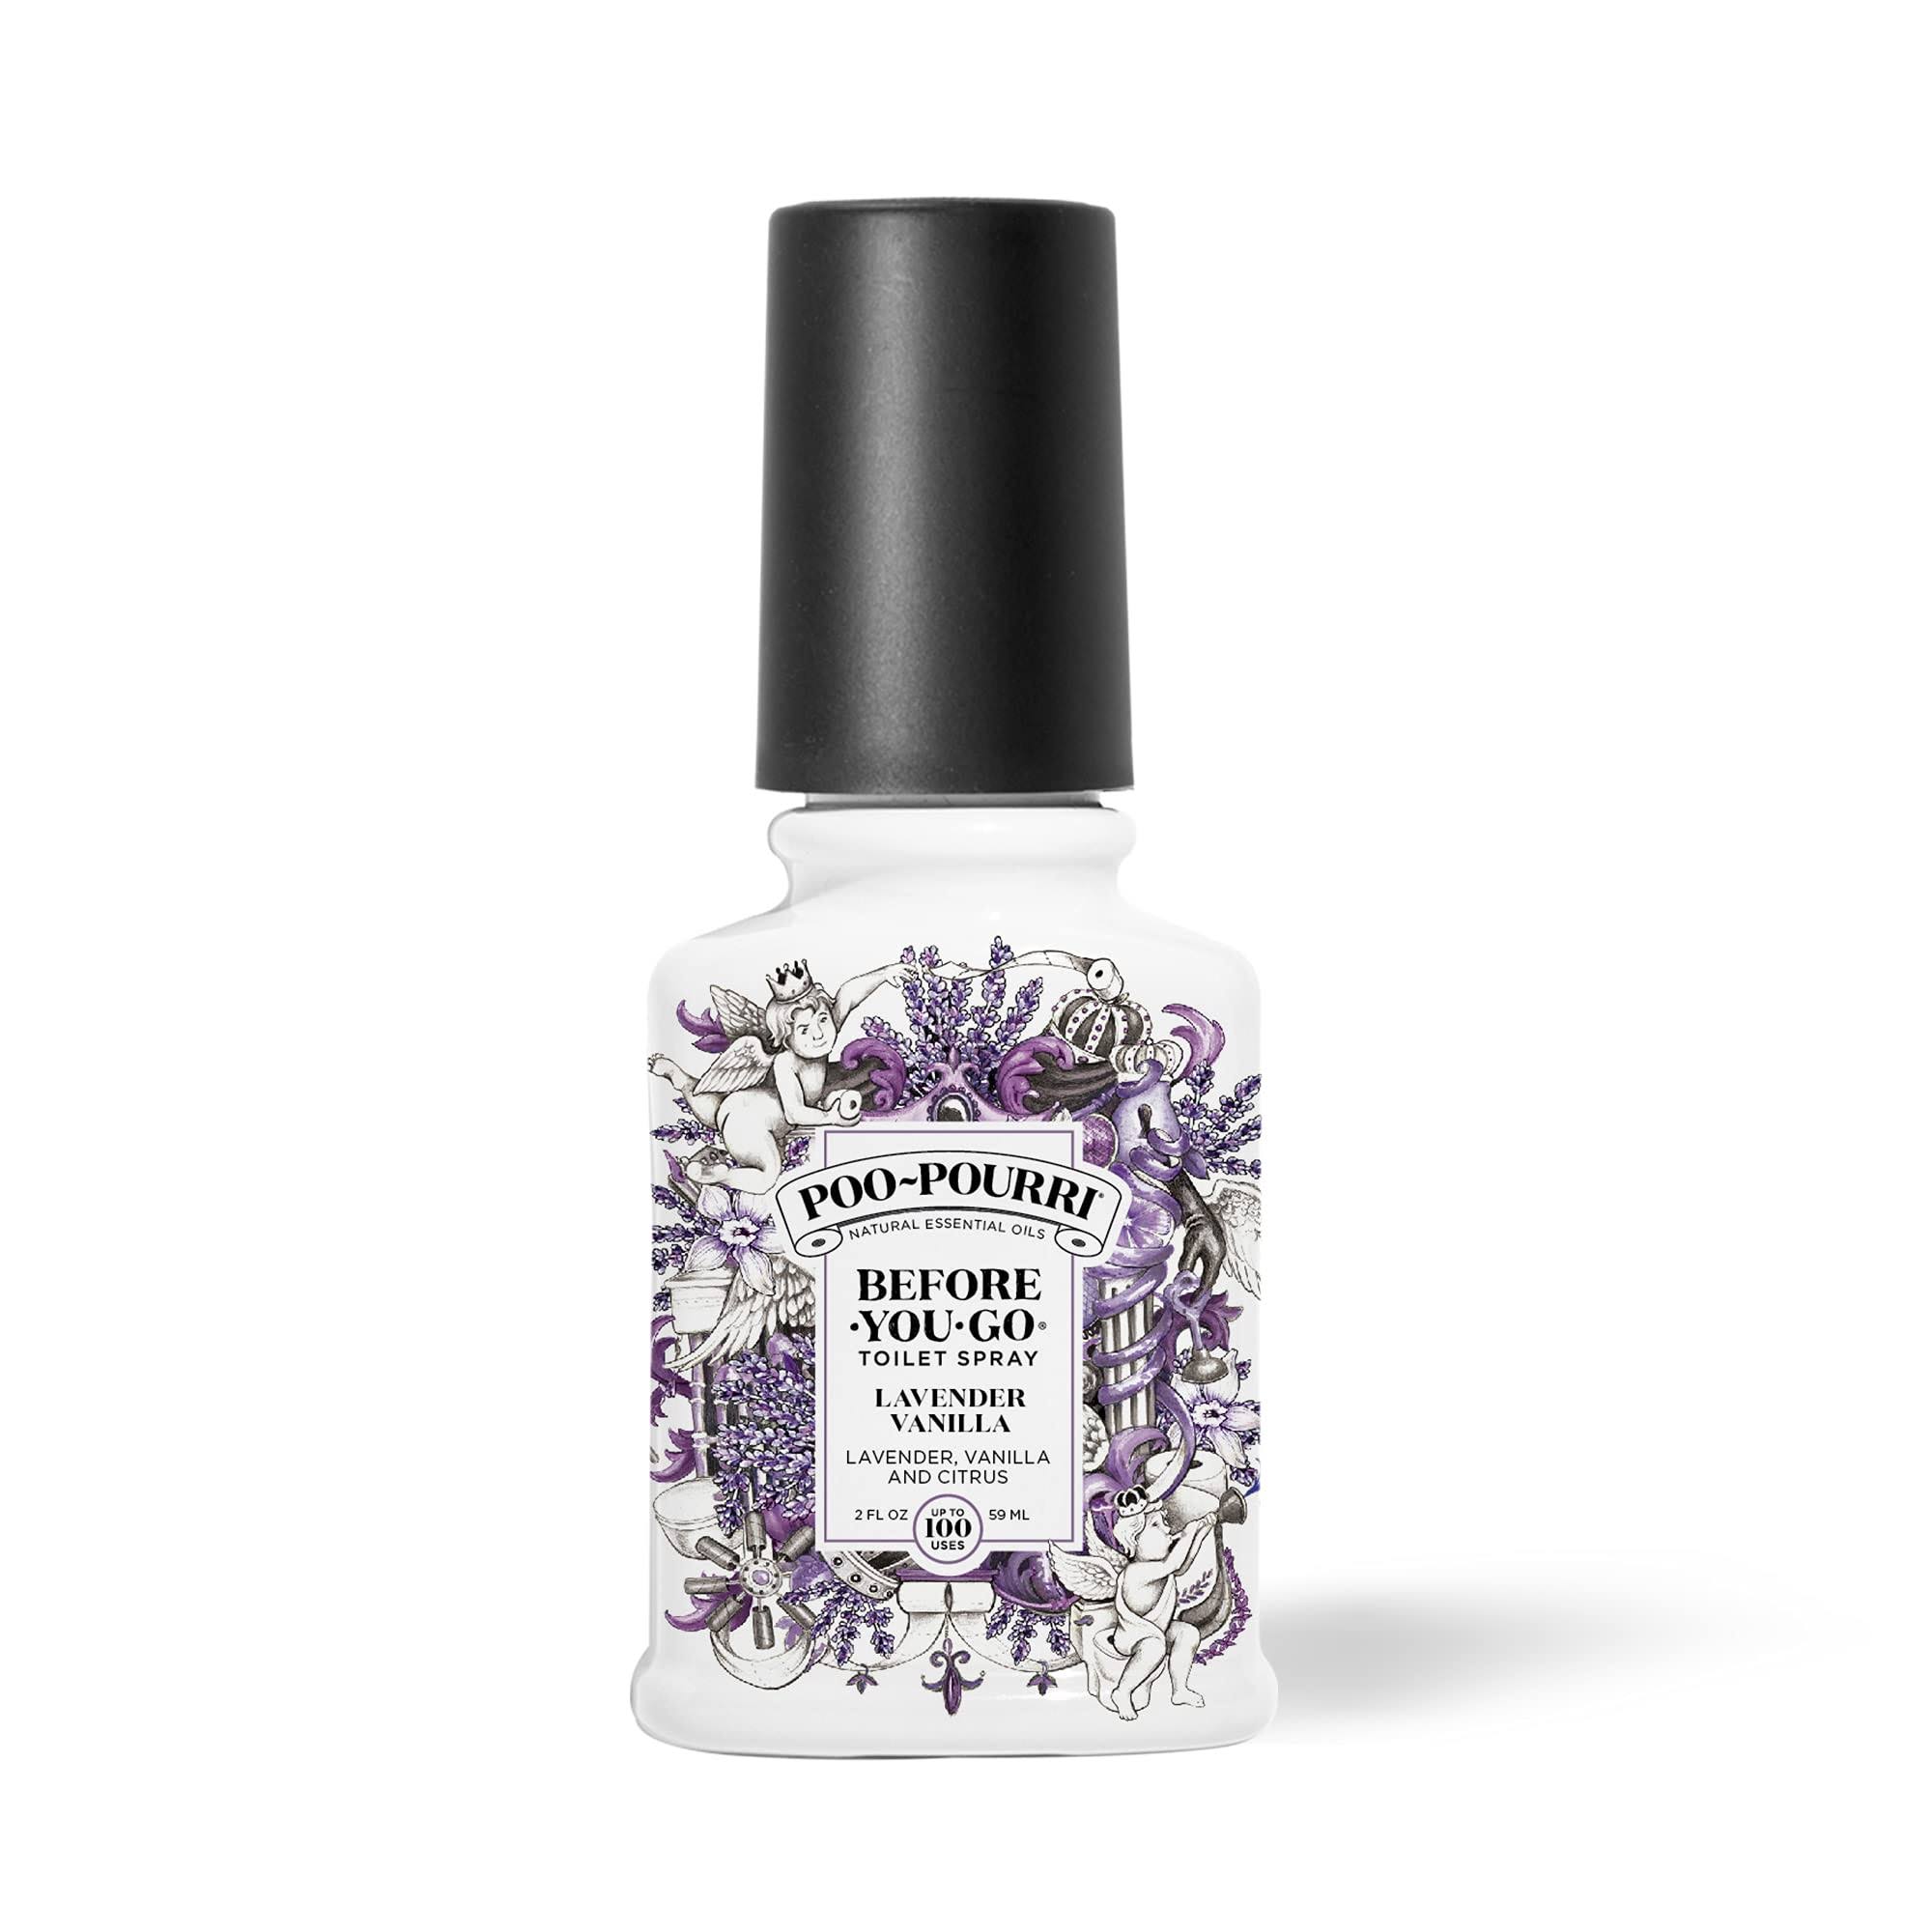 Poo-Pourri Lavender Vanilla Toilet Spray - 59ml